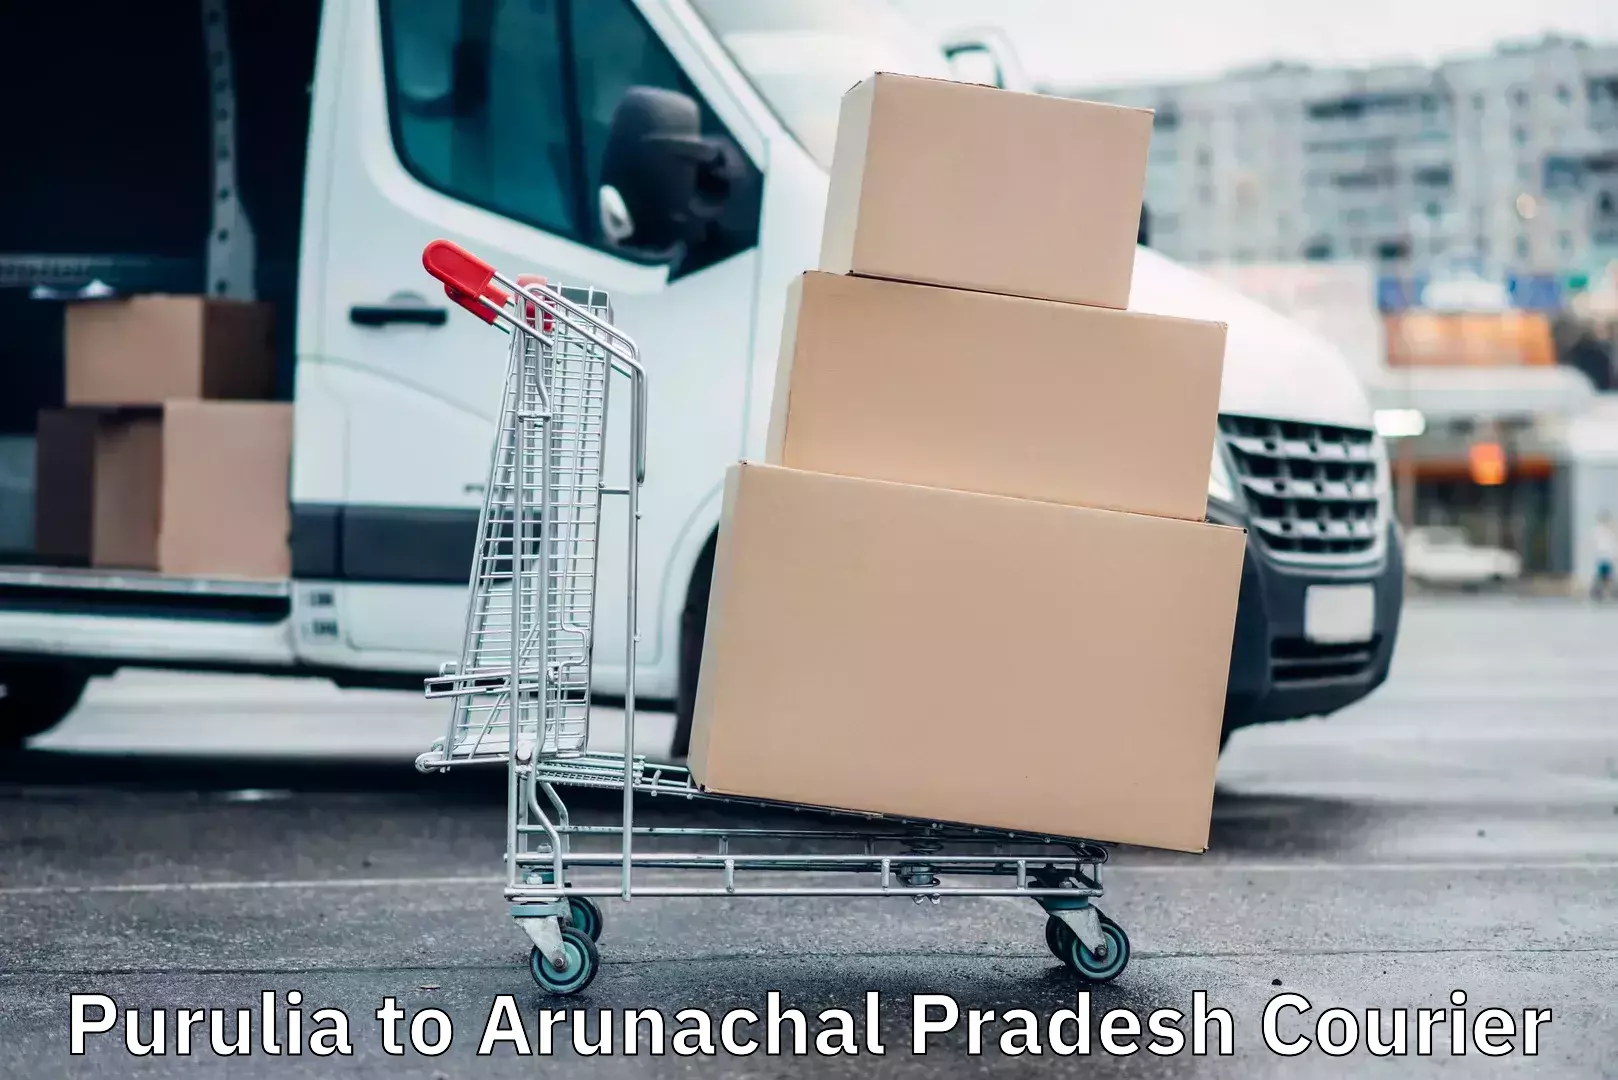 24-hour courier service Purulia to Arunachal Pradesh